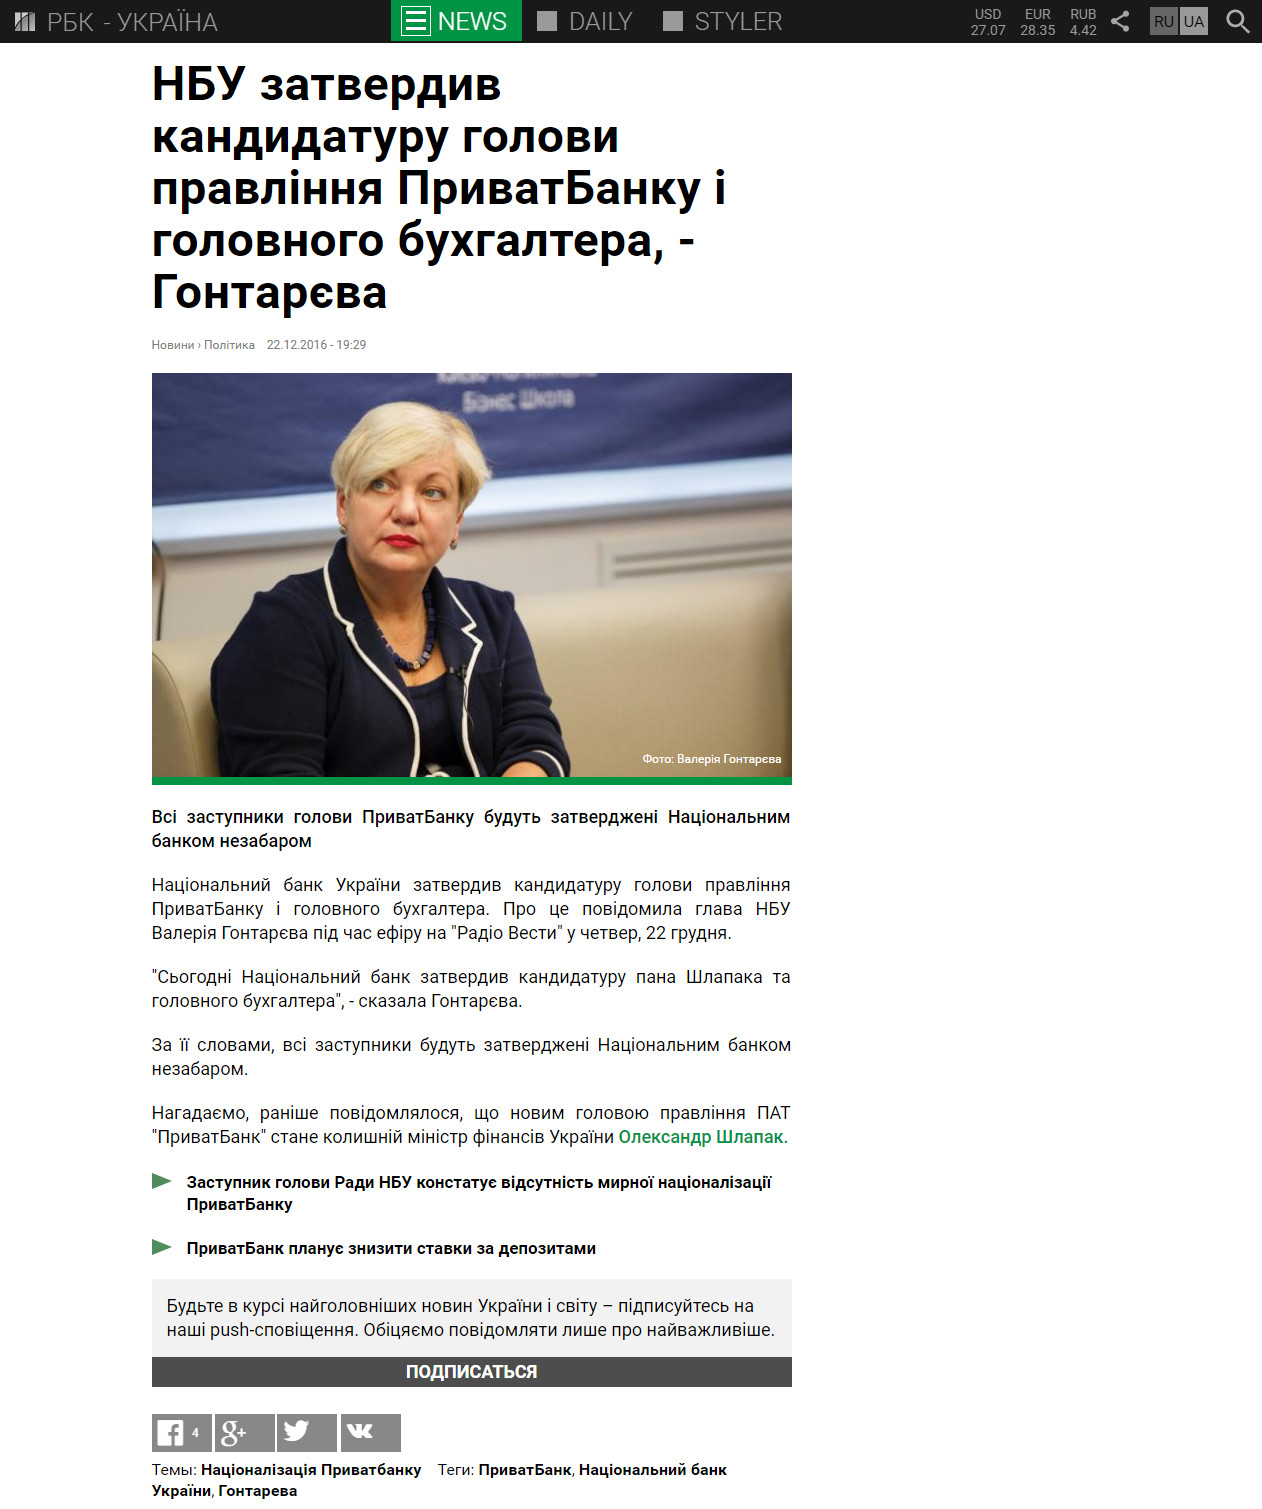 https://www.rbc.ua/ukr/news/nbu-utverdil-kandidaturu-glavy-pravleniya-1482427745.html